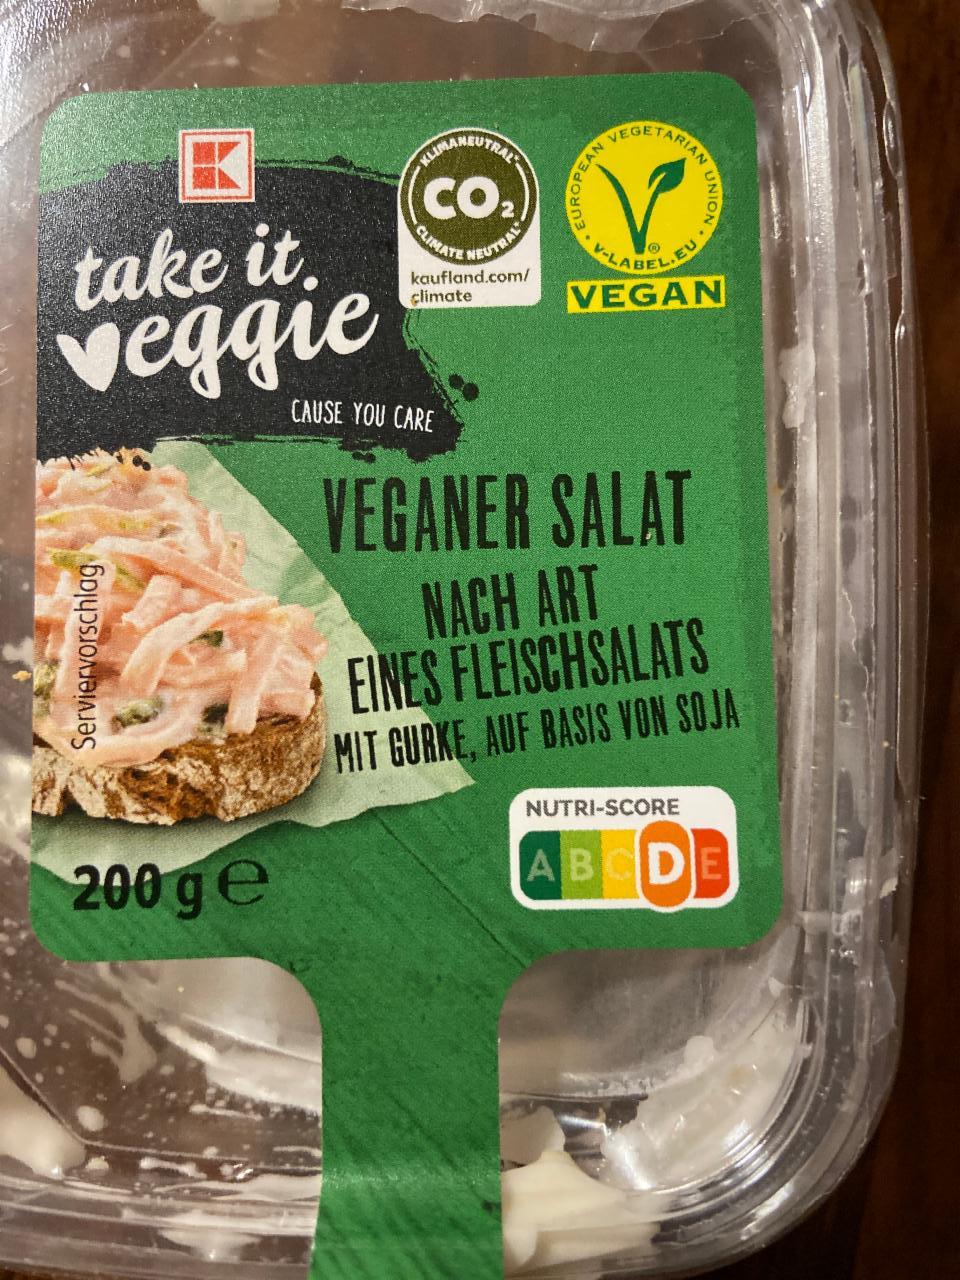 Fotografie - veganer salat K-take it veggie